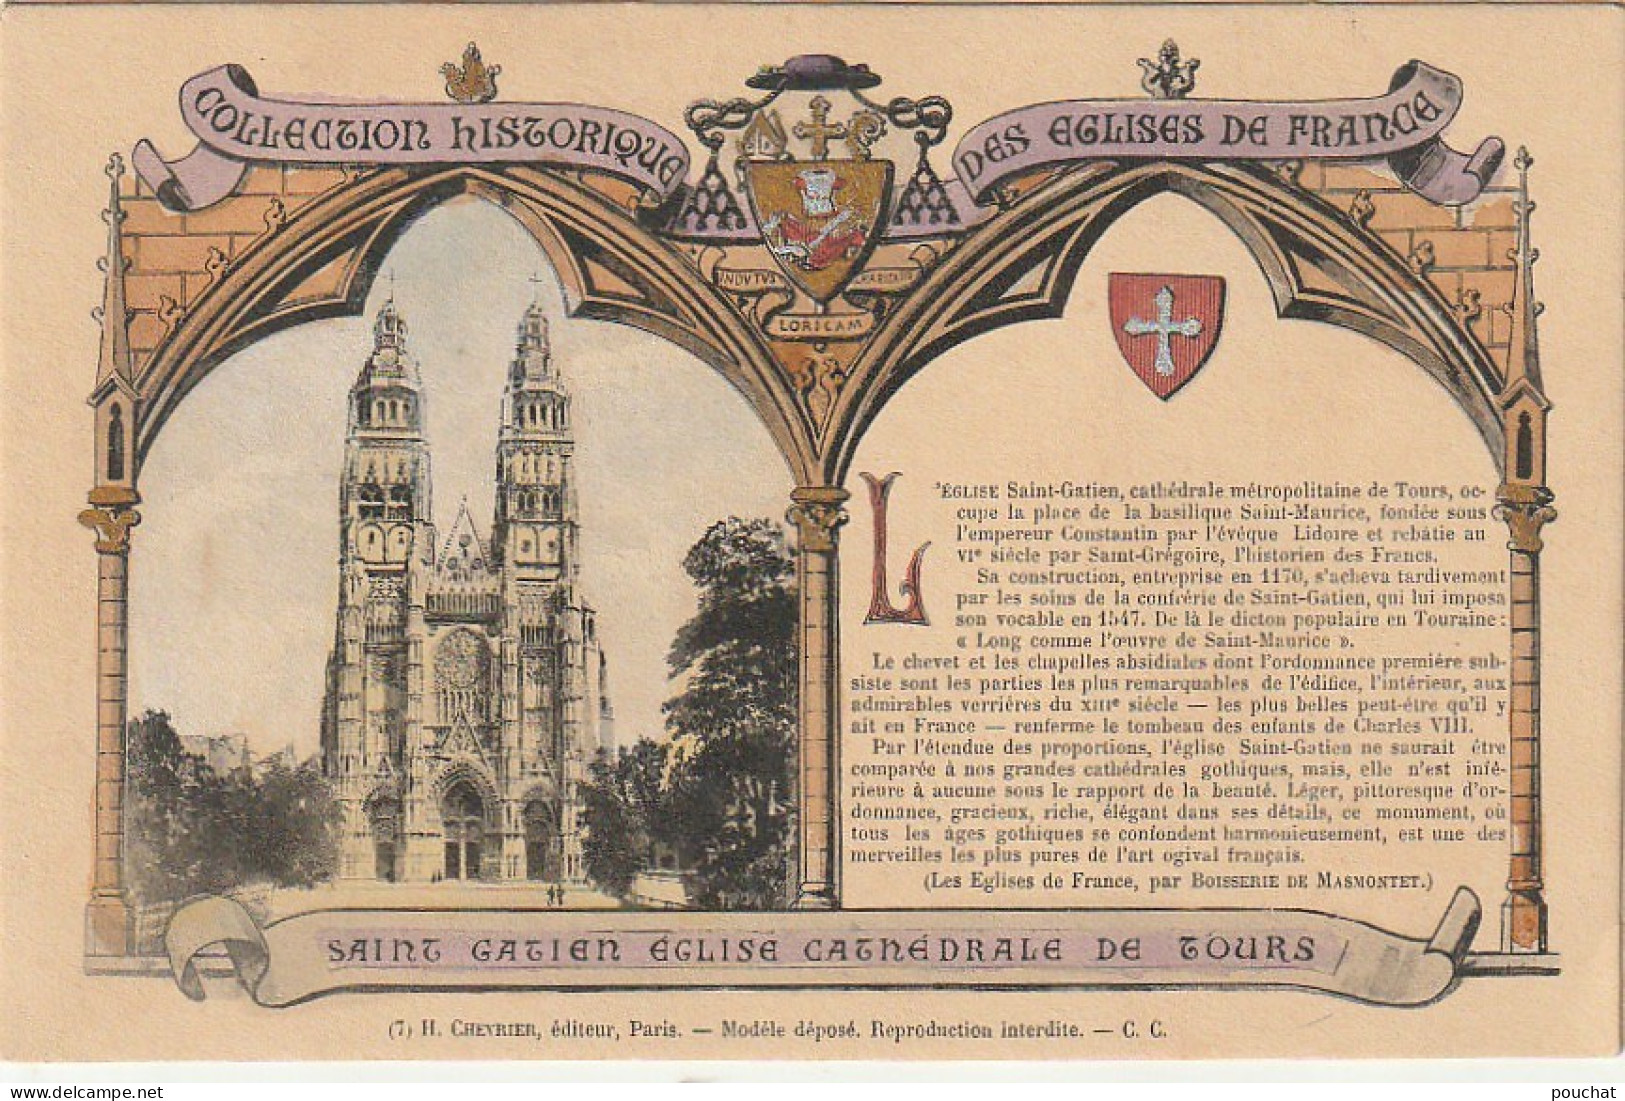 ZY 56-(37) COLLECTION HISTORIQUE DES EGLISES DE FRANCE - SAINT GATIEN EGLISE CATHEDRALE DE TOURS - CARTE COLORISEE - Churches & Cathedrals